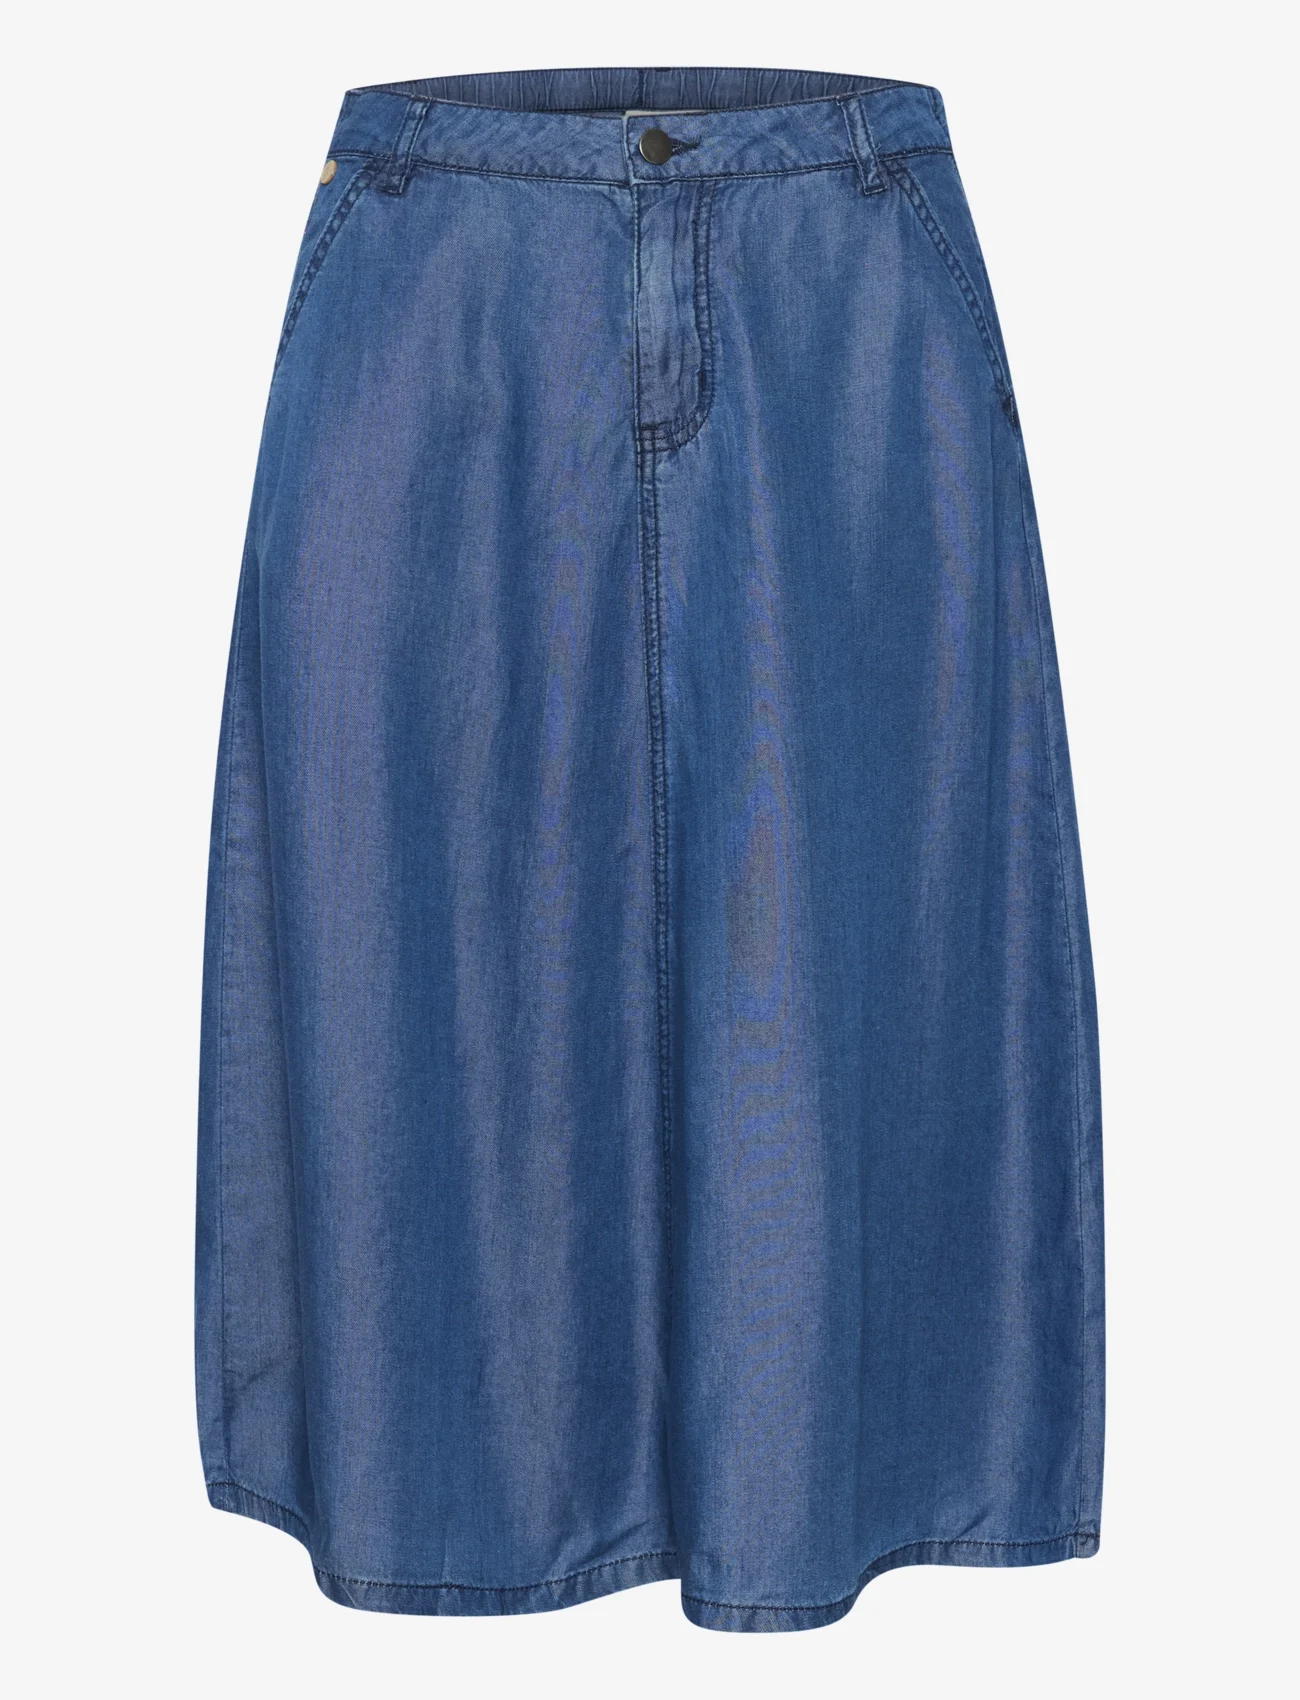 Cream - CRMolly Skirt - jeanskjolar - light blue denim - 0